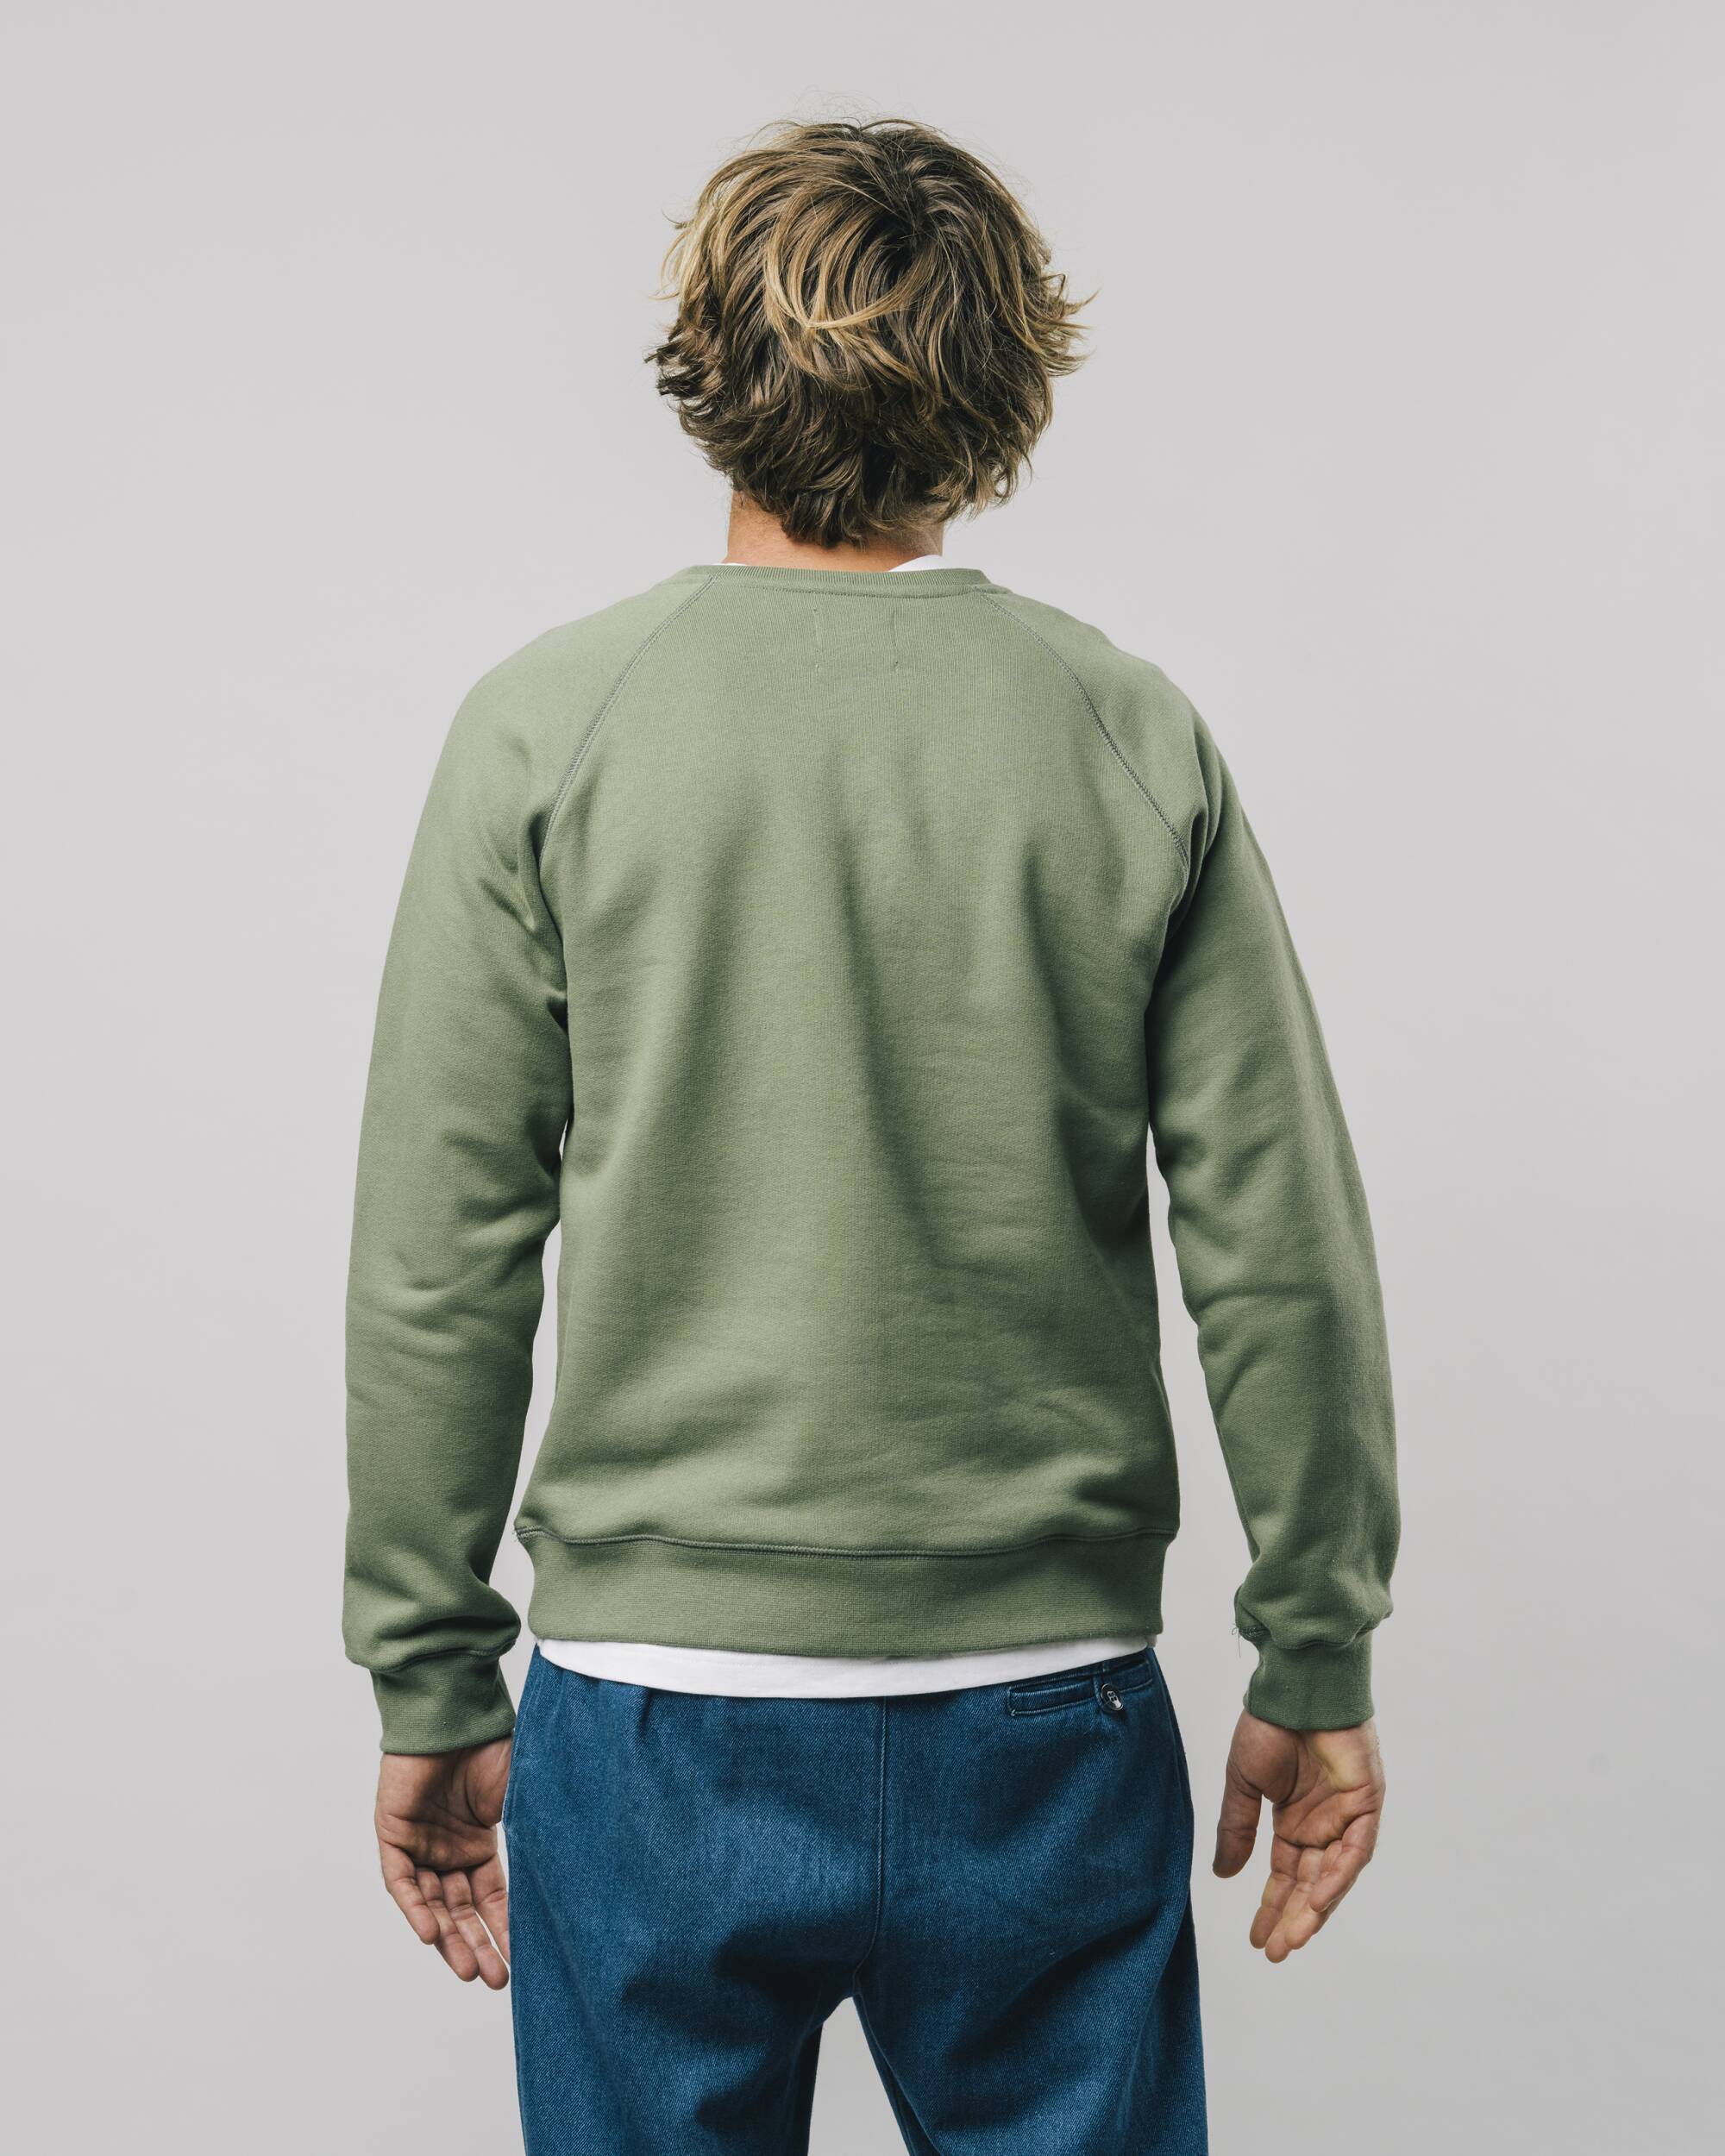 Sweatshirt "The Hiker" in grün / oliv aus 100% Bio - Baumwolle von Brava Fabrics